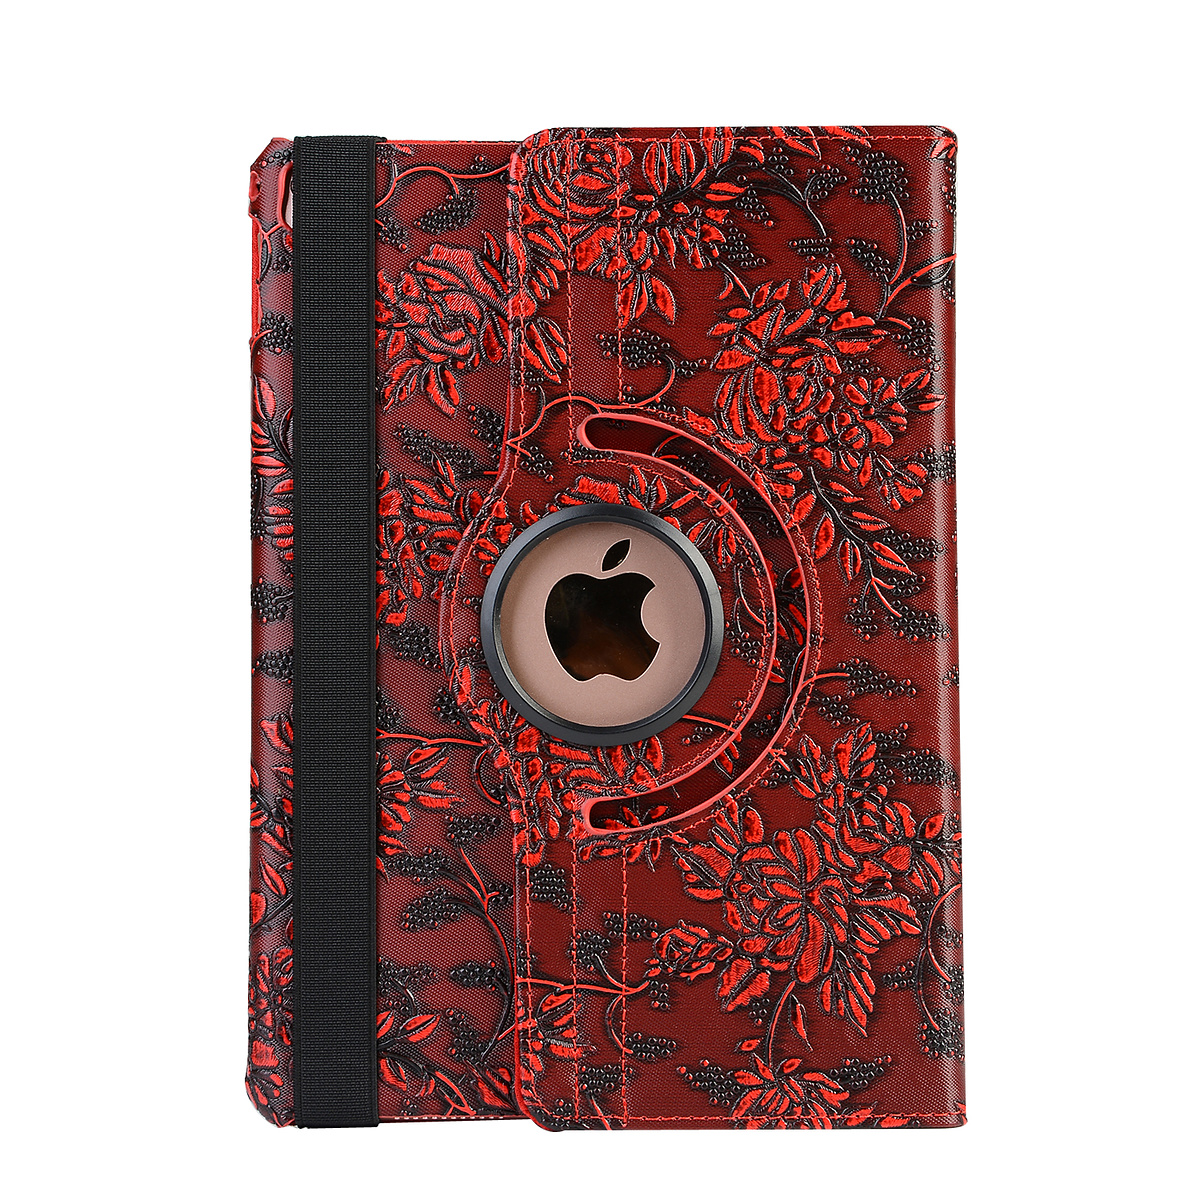 Läderfodral blommor röd, iPad 2/3/4